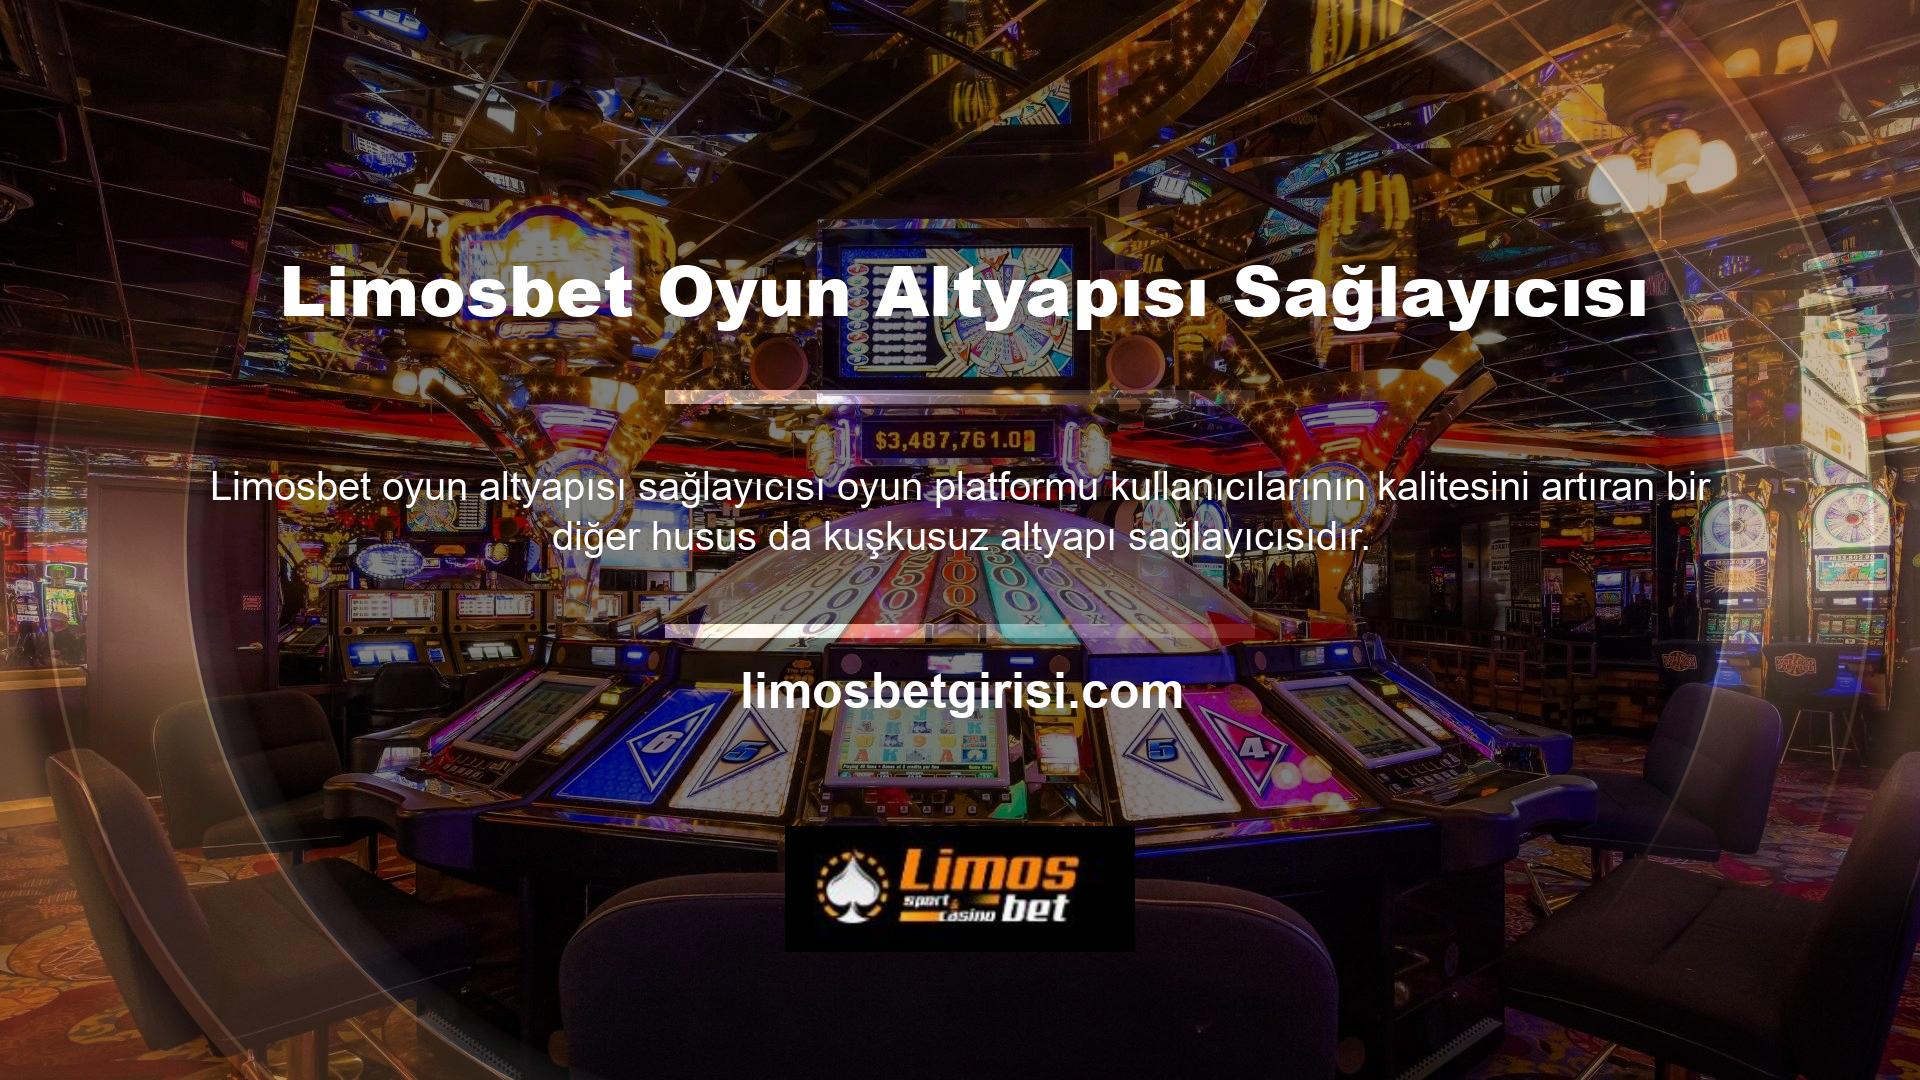 Limosbet sunduğu casino oyunlarının bu kadar verimli olmasının en büyük sebebi altyapı sağlayıcıların nitelikli yapısıdır